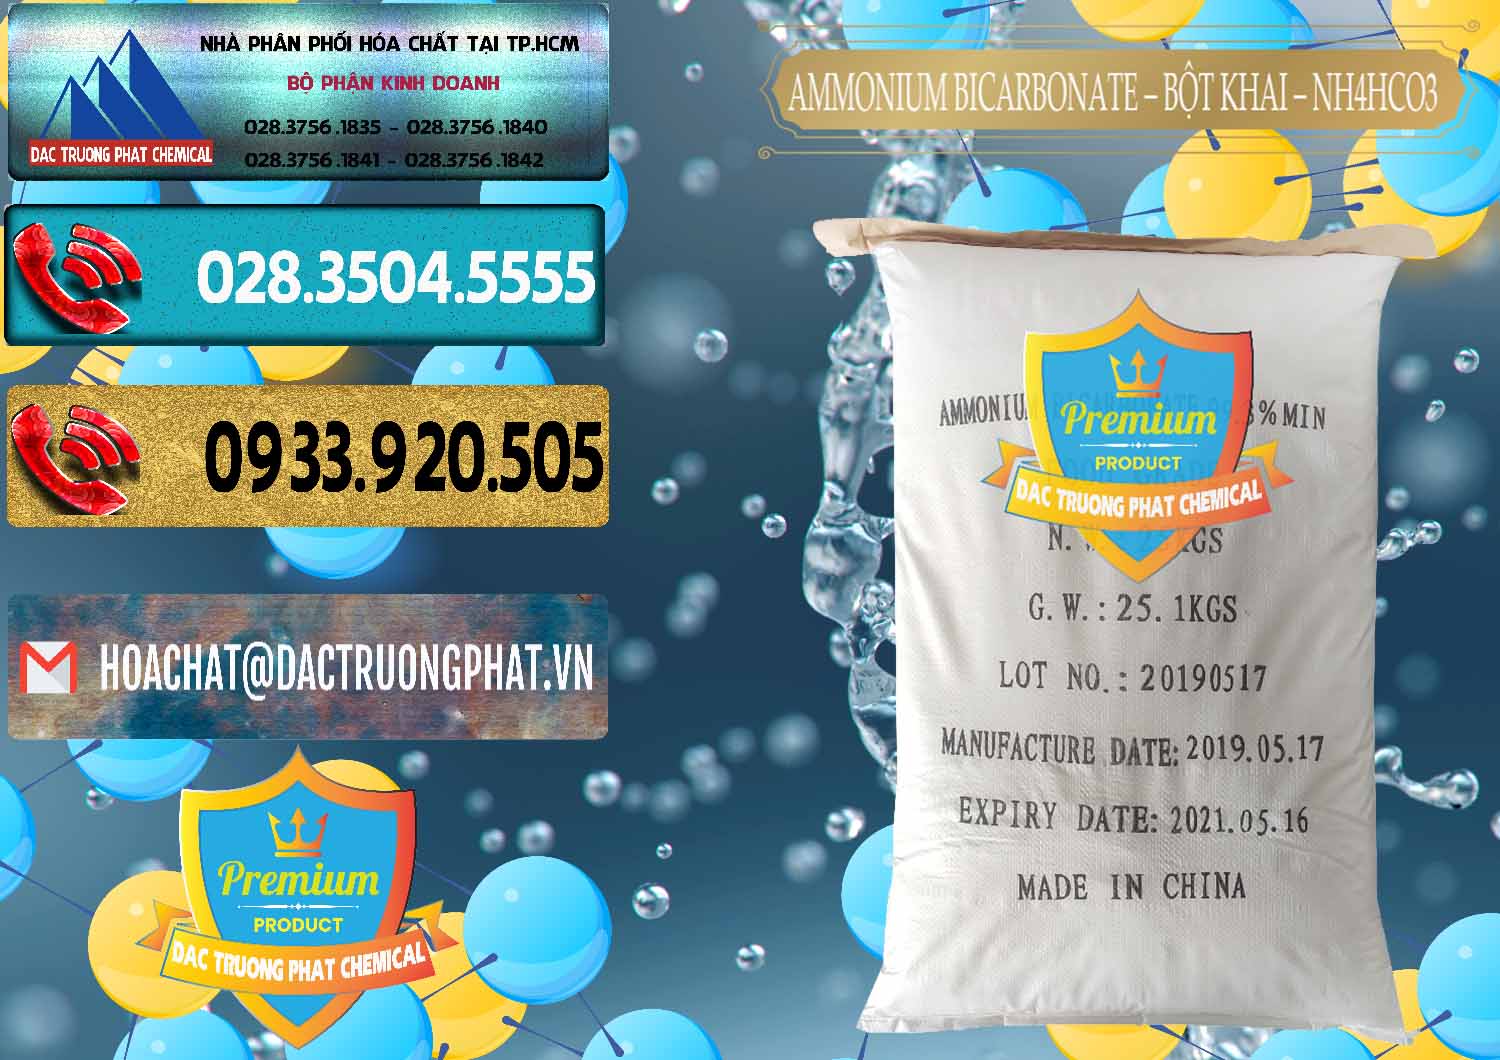 Cty bán ( cung cấp ) Ammonium Bicarbonate - Bột Khai Food Grade Trung Quốc China - 0018 - Nơi bán - phân phối hóa chất tại TP.HCM - hoachatdetnhuom.com